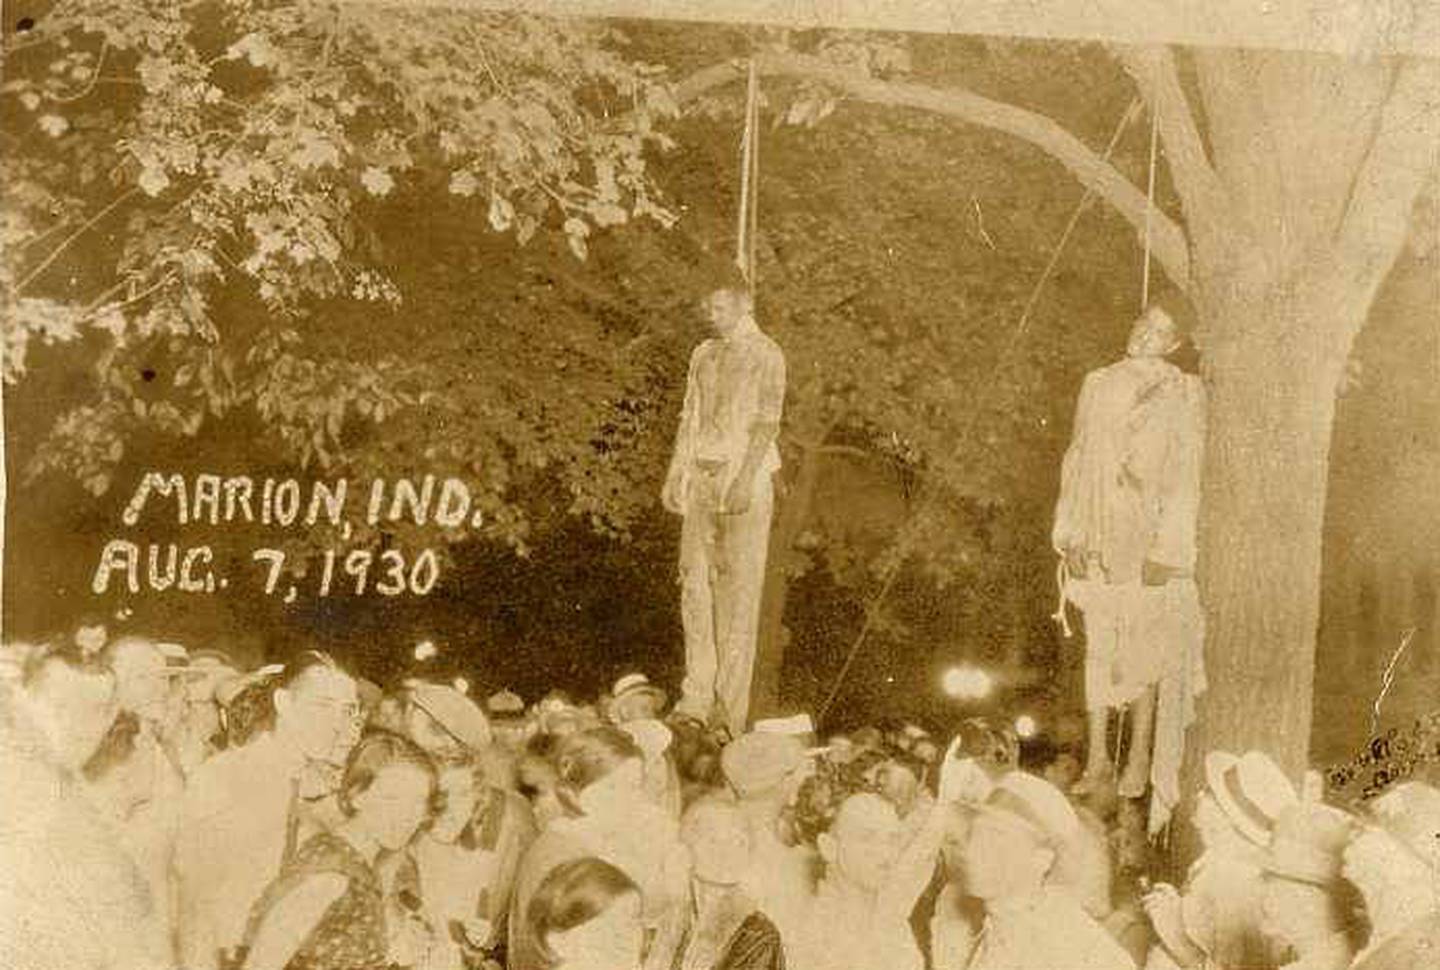 El linchamiento de dos afroamericanos en Marion, Indiana, el 7 de agosto de 1930.